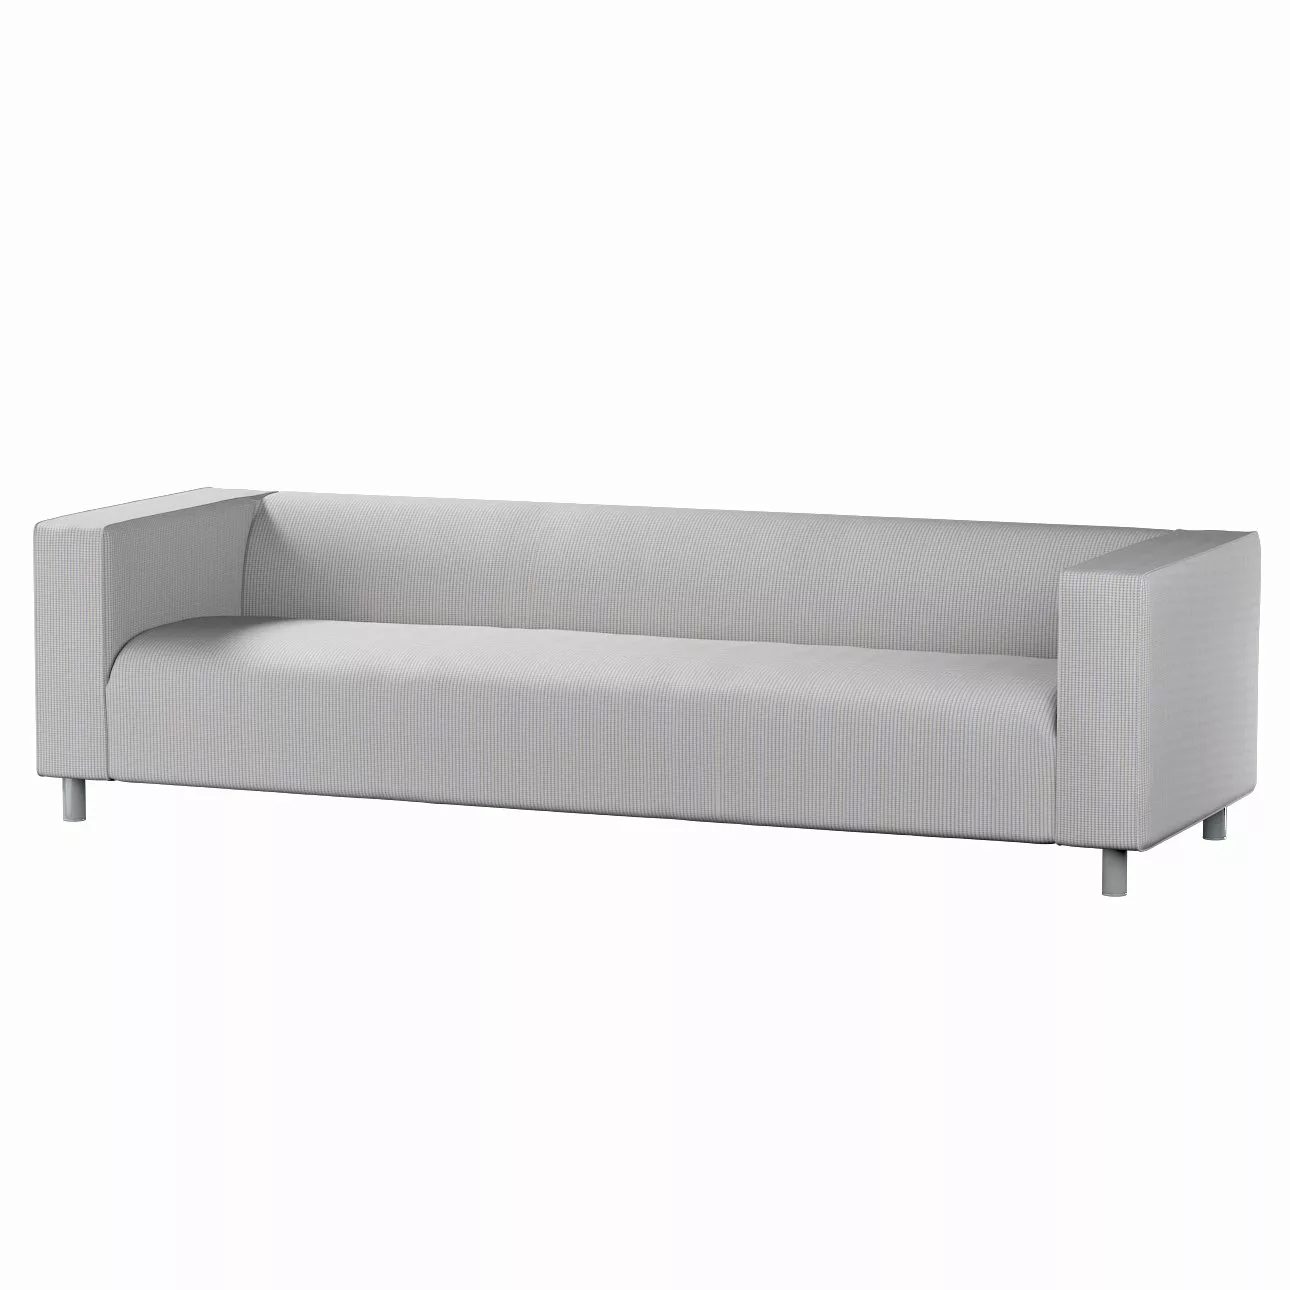 Bezug für Klippan 4-Sitzer Sofa, beige-blau, Bezug für Klippan 4-Sitzer, Li günstig online kaufen